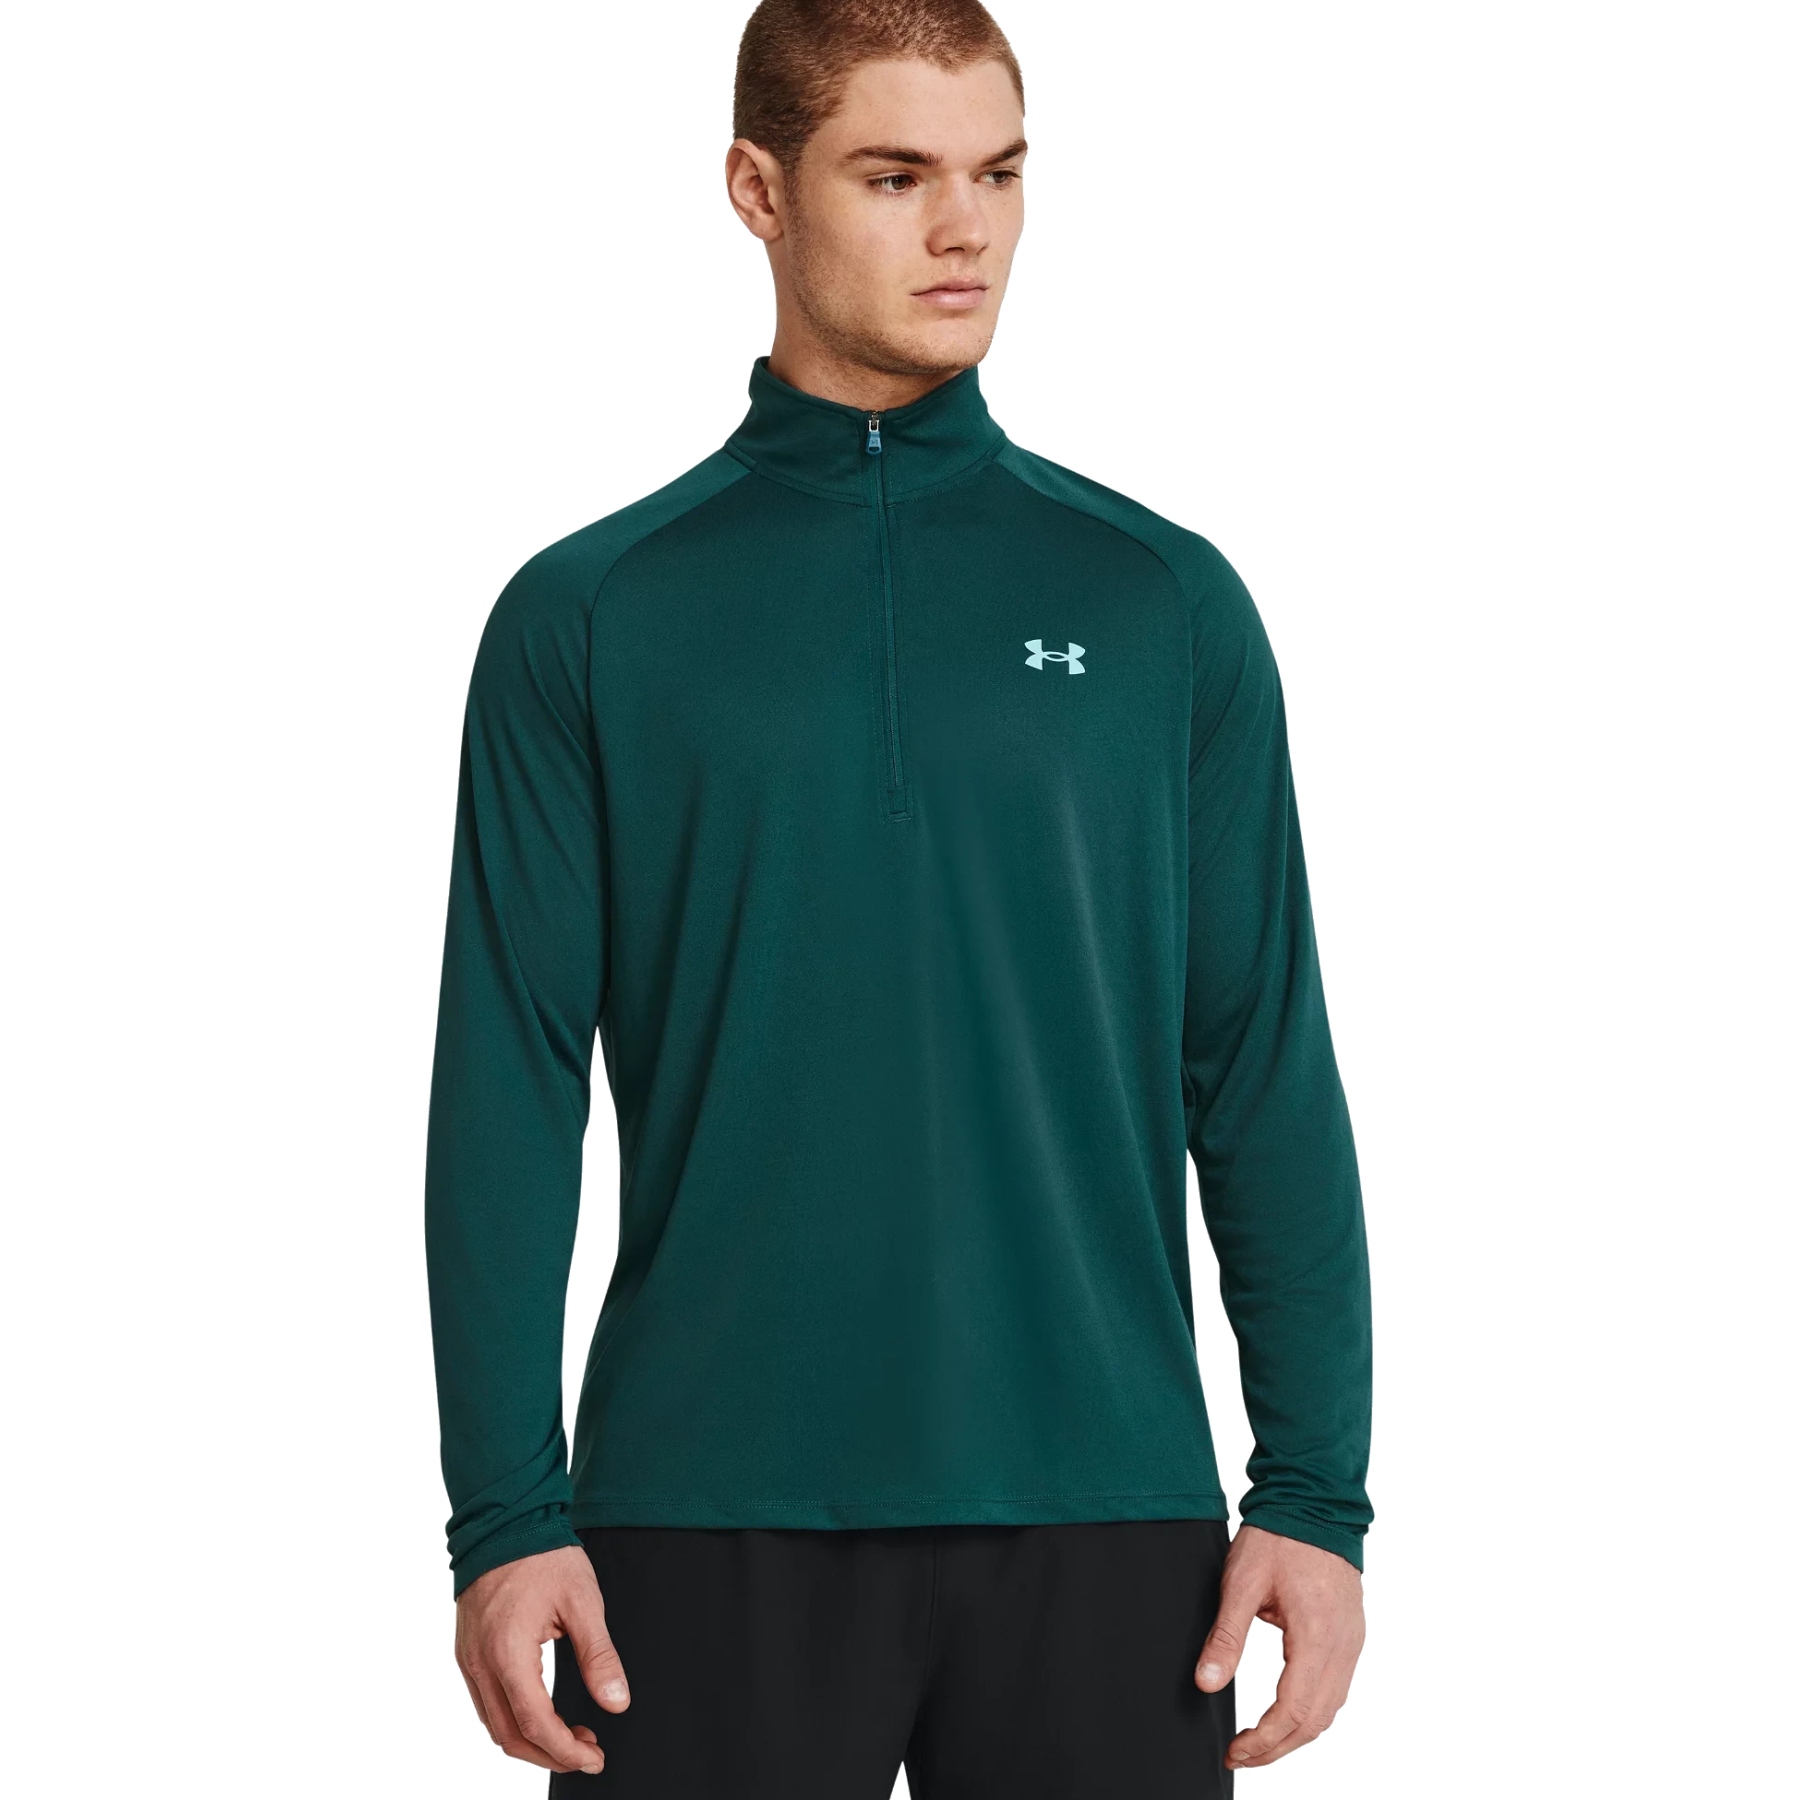 Produktbild von Under Armour UA Tech™ Langarm-Shirt mit ½-Zip Herren - Hydro Teal/Radial Turquoise